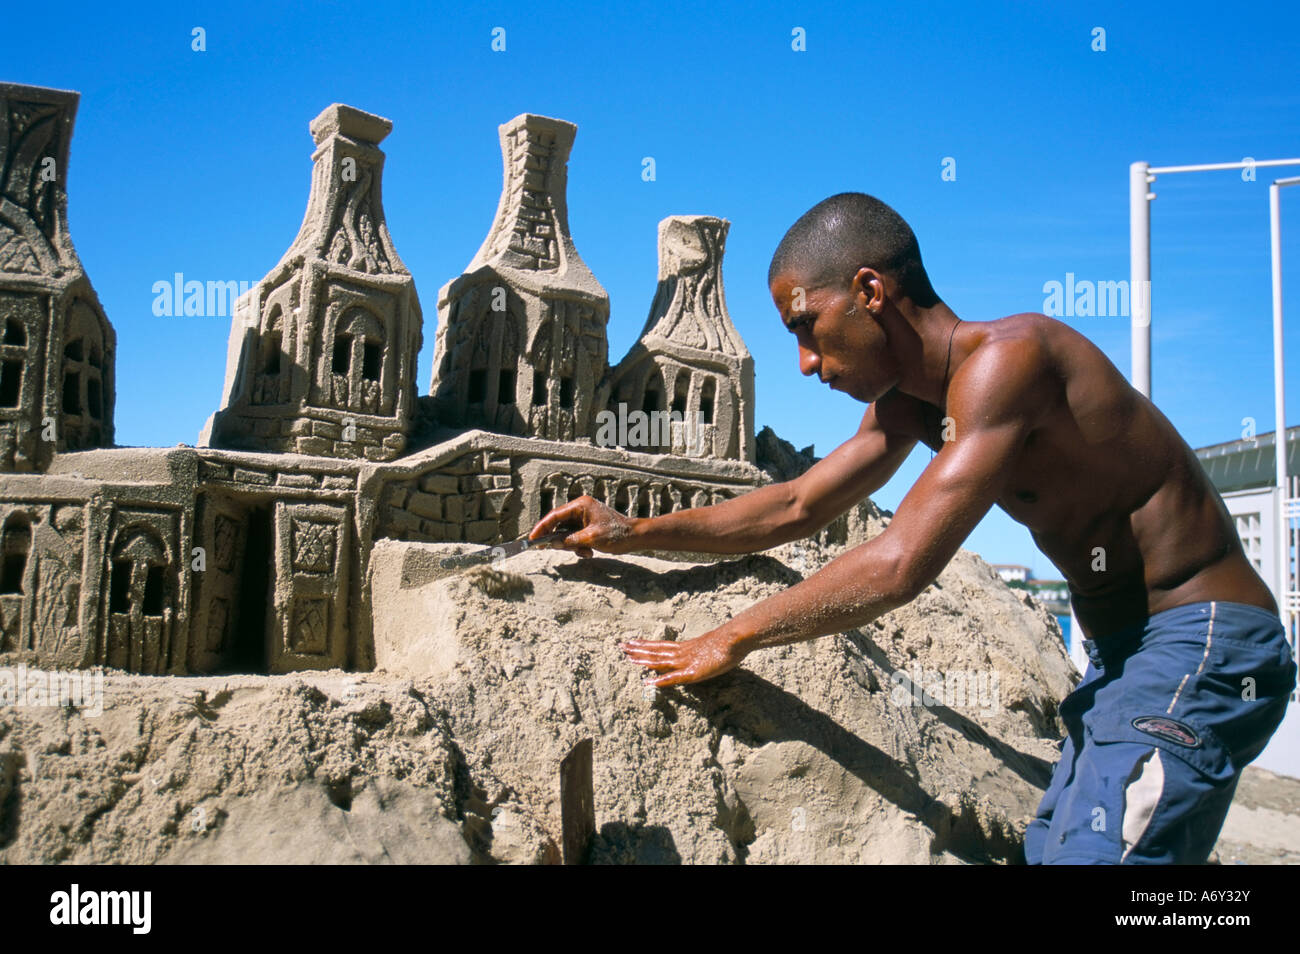 Sculpteur de sable Copacabana Rio de Janeiro Brésil Amérique du Sud Banque D'Images